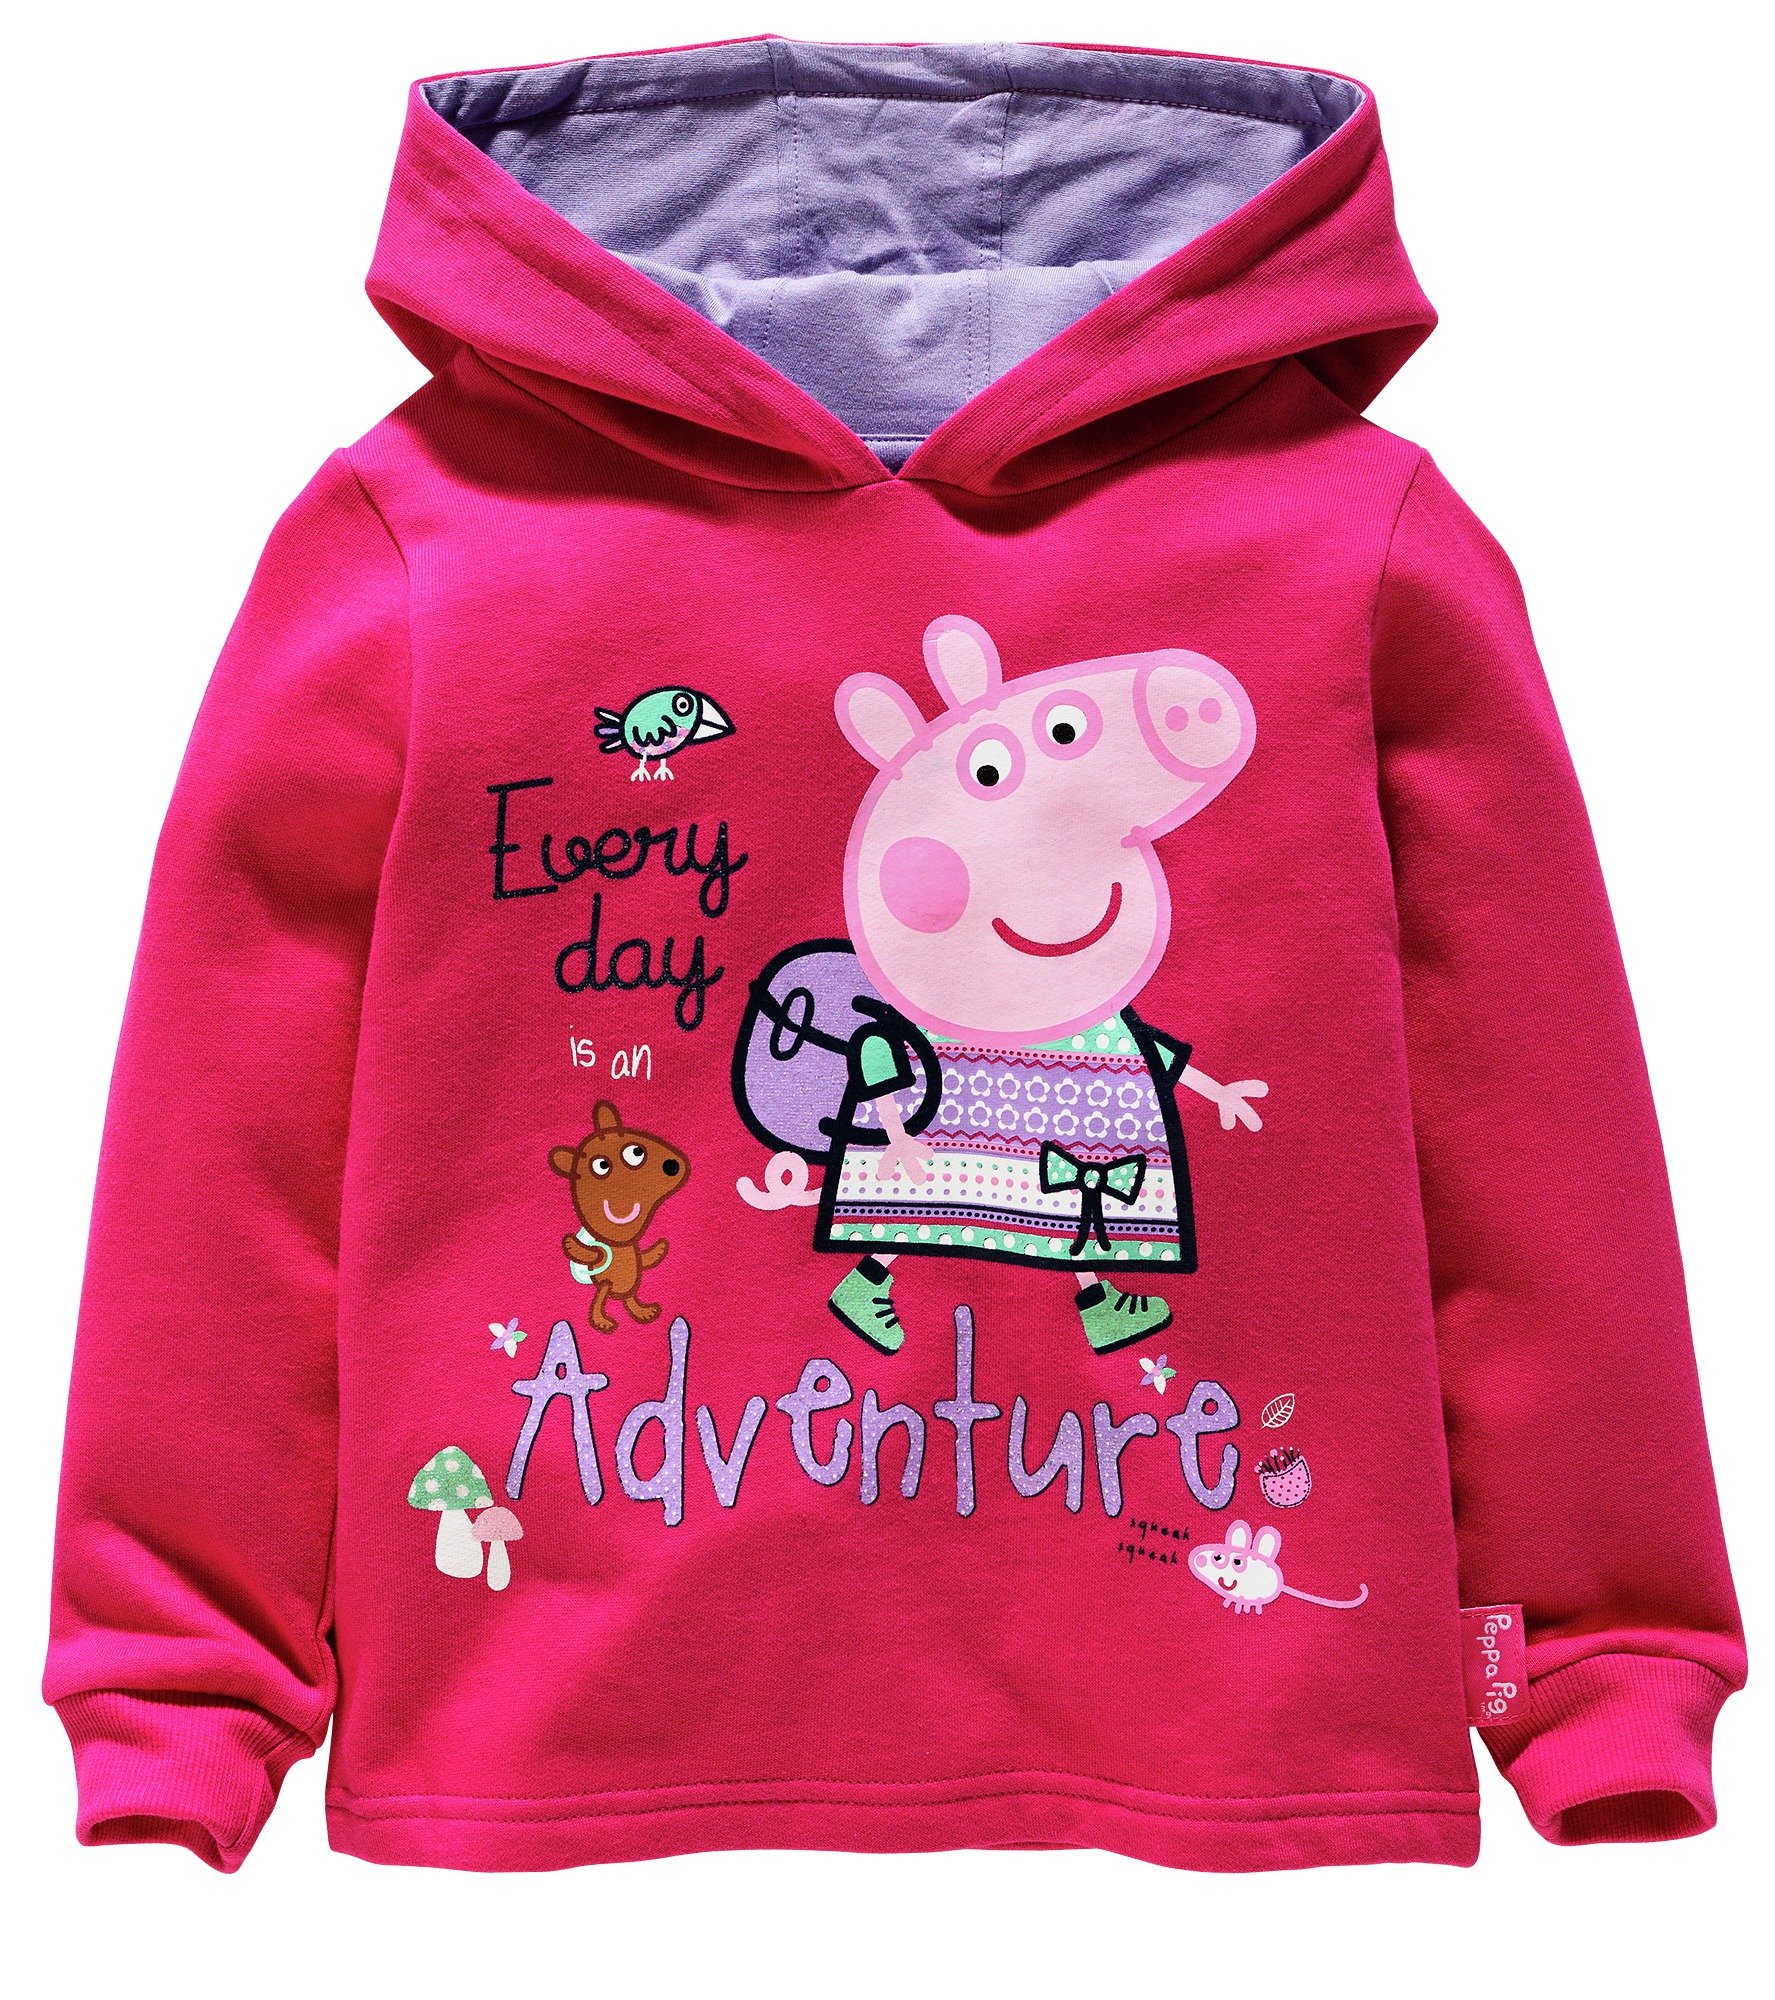 Peppa Pig Adventures Hoodie - 3-4 Years